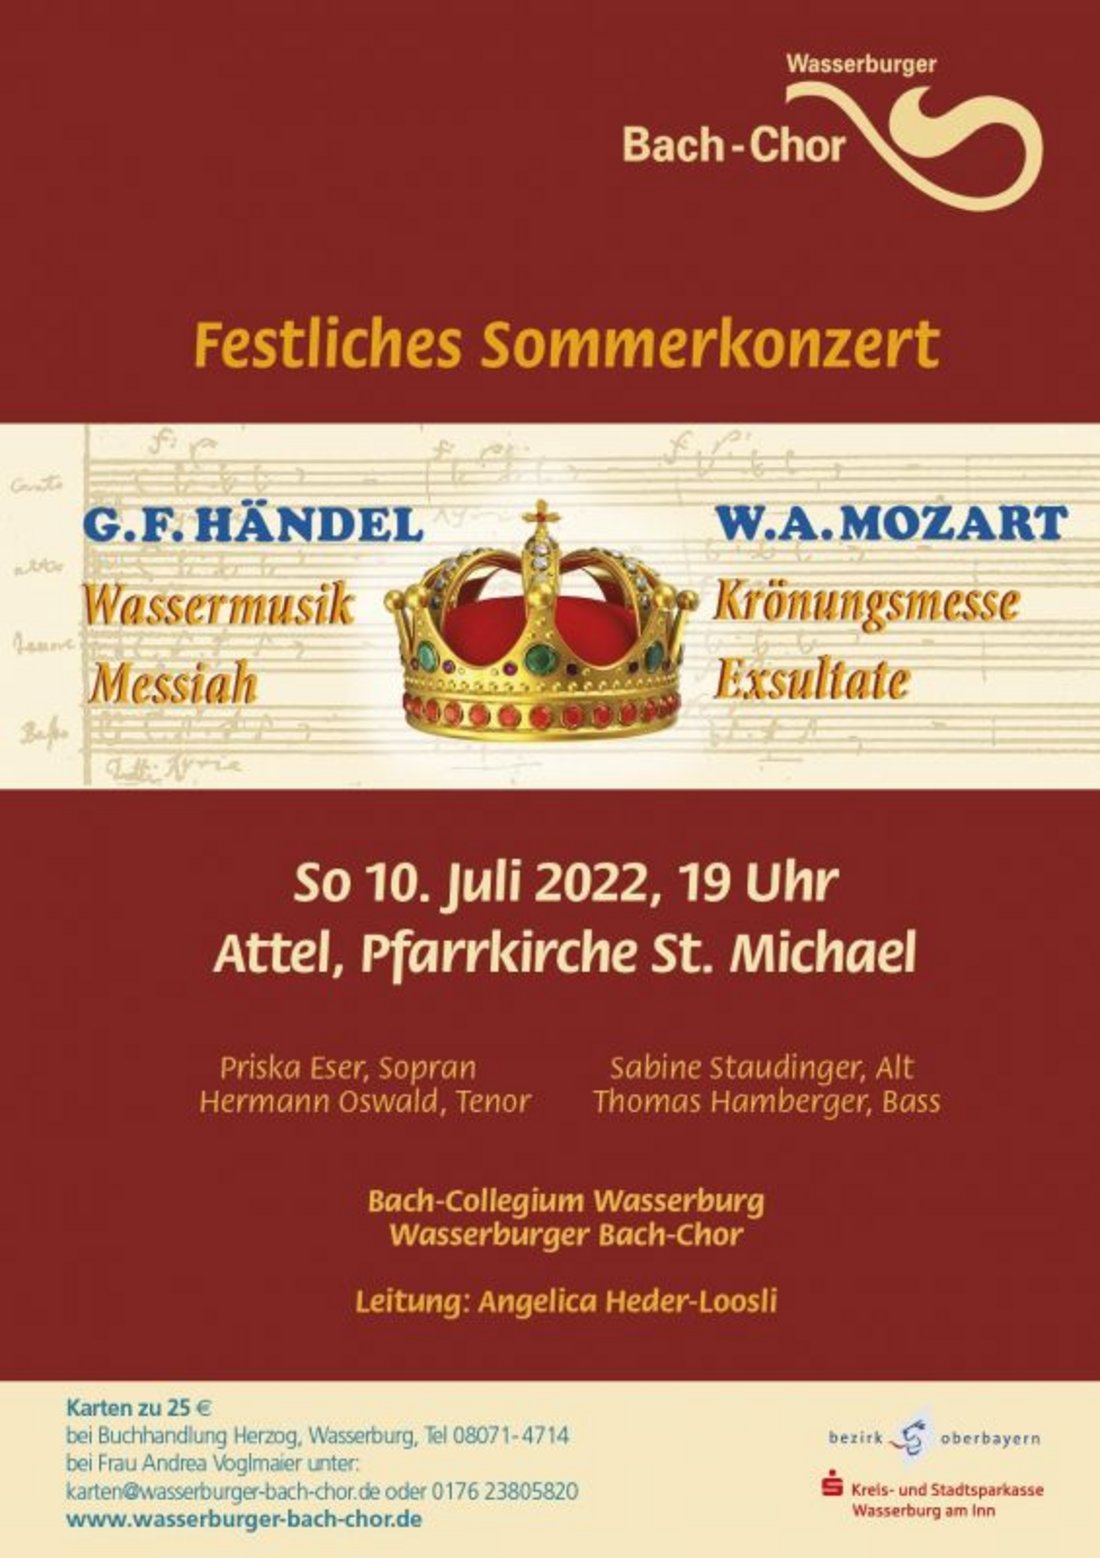 Festliches Sommerkonzert mit dem Wasserburger Bach-Chor